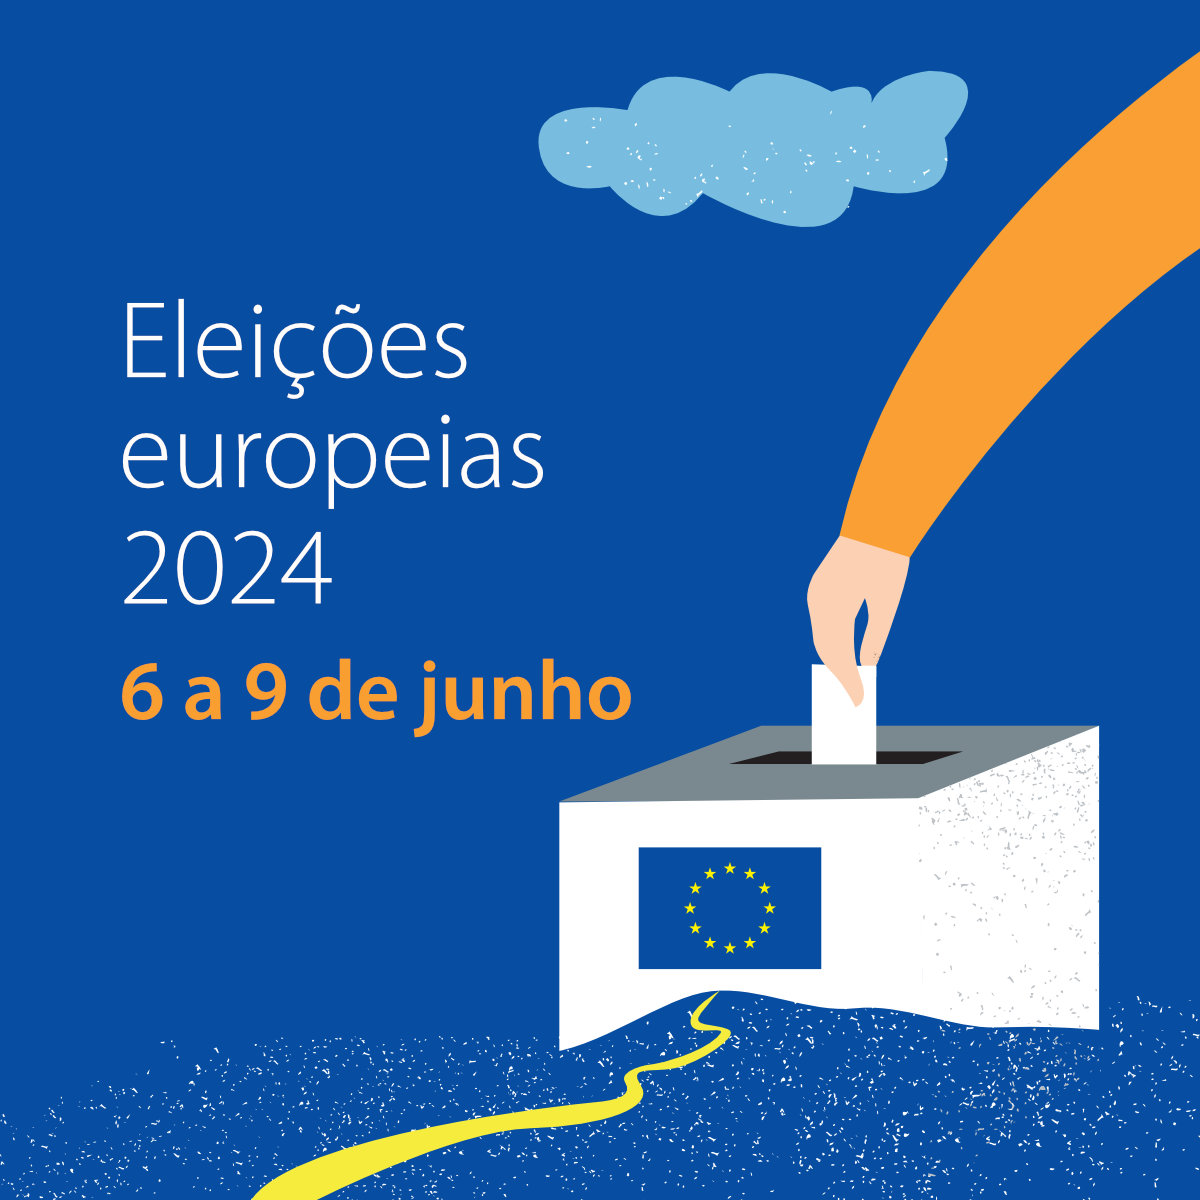 Eleições europeias 2024 - Square.jpg